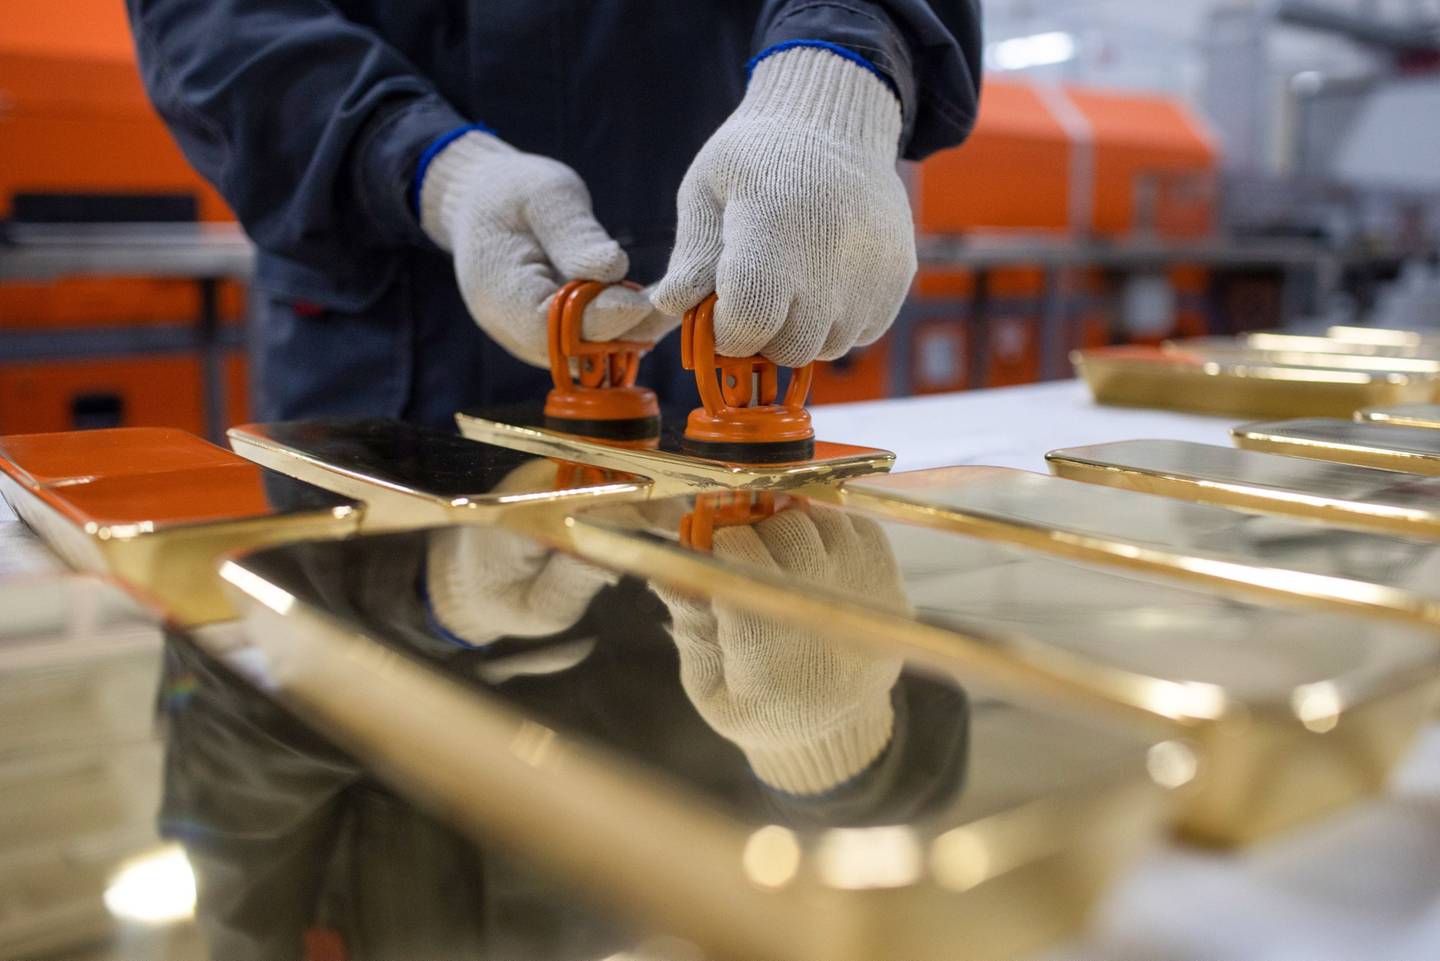 Un trabajador manipula lingotes de oro de 12 kilogramos después de la fundición automatizada en la planta de metales no ferrosos Prioksky en Kasimov, Rusia, el jueves 9 de diciembre de 2021.